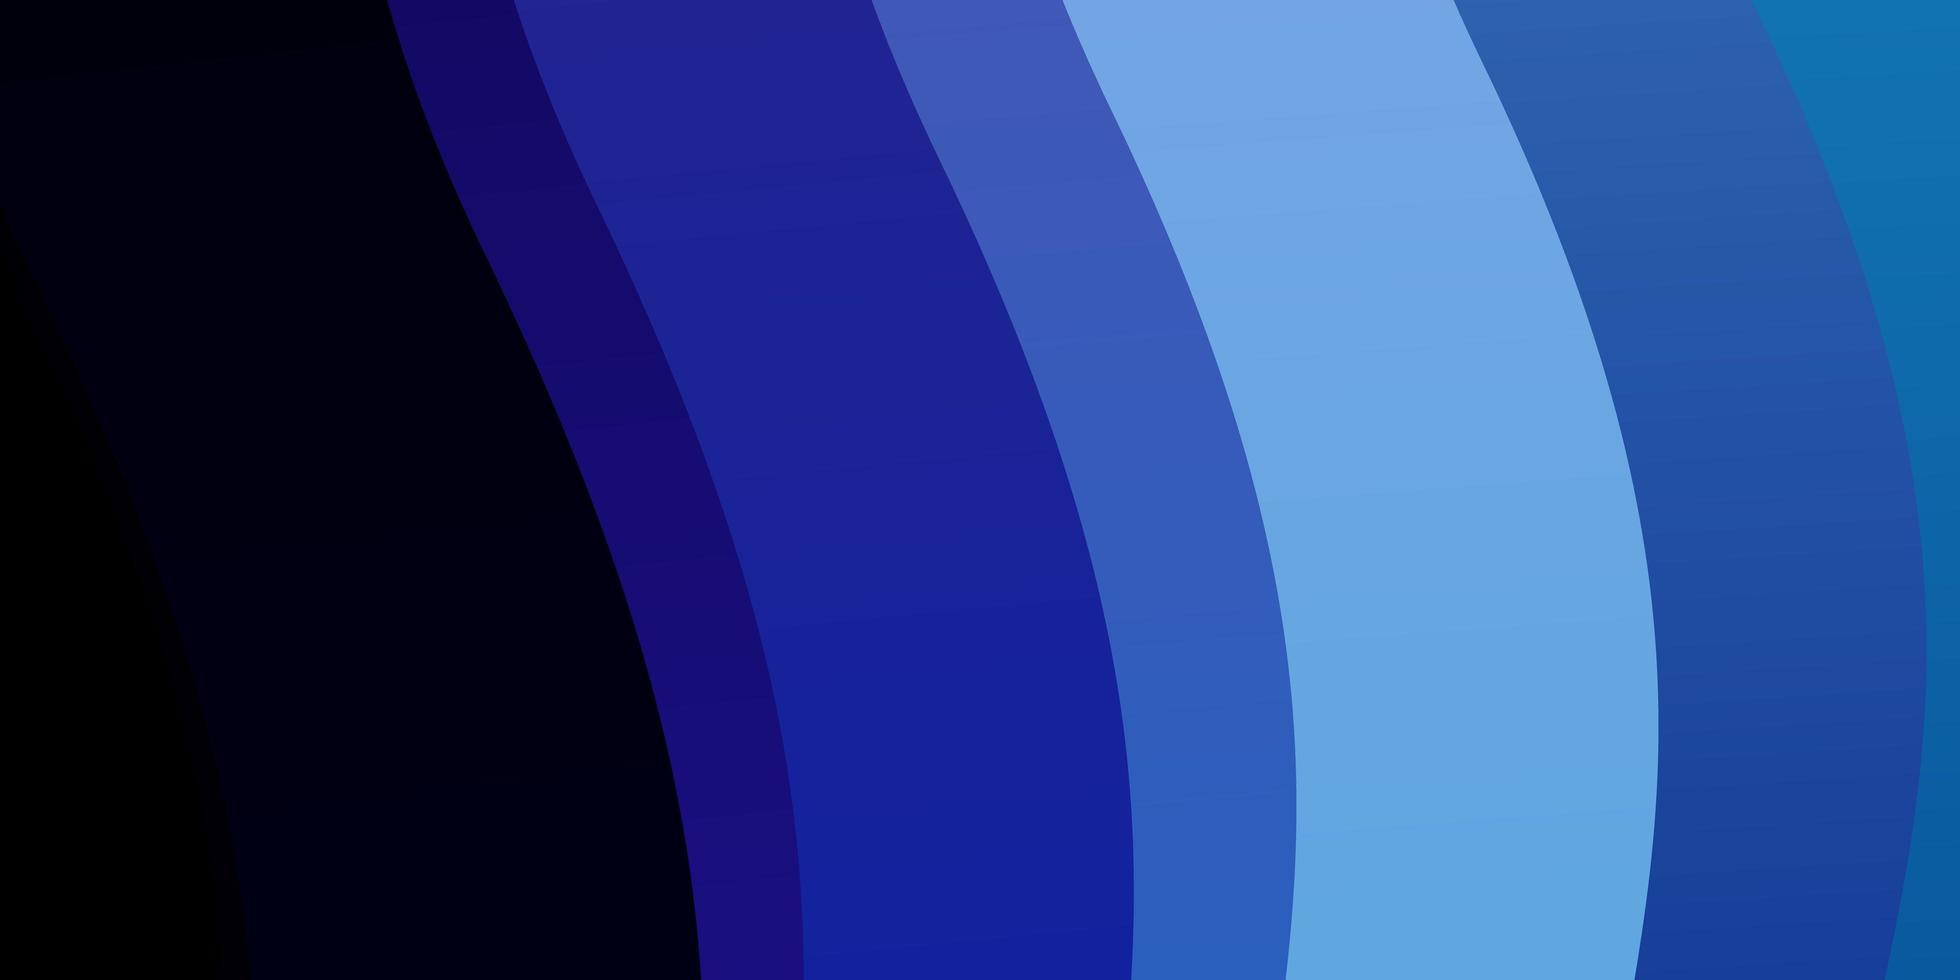 mörkrosa blå vektorbakgrund med böjda linjer ljus illustration med lutande cirkelbågemönster för reklamannonser vektor